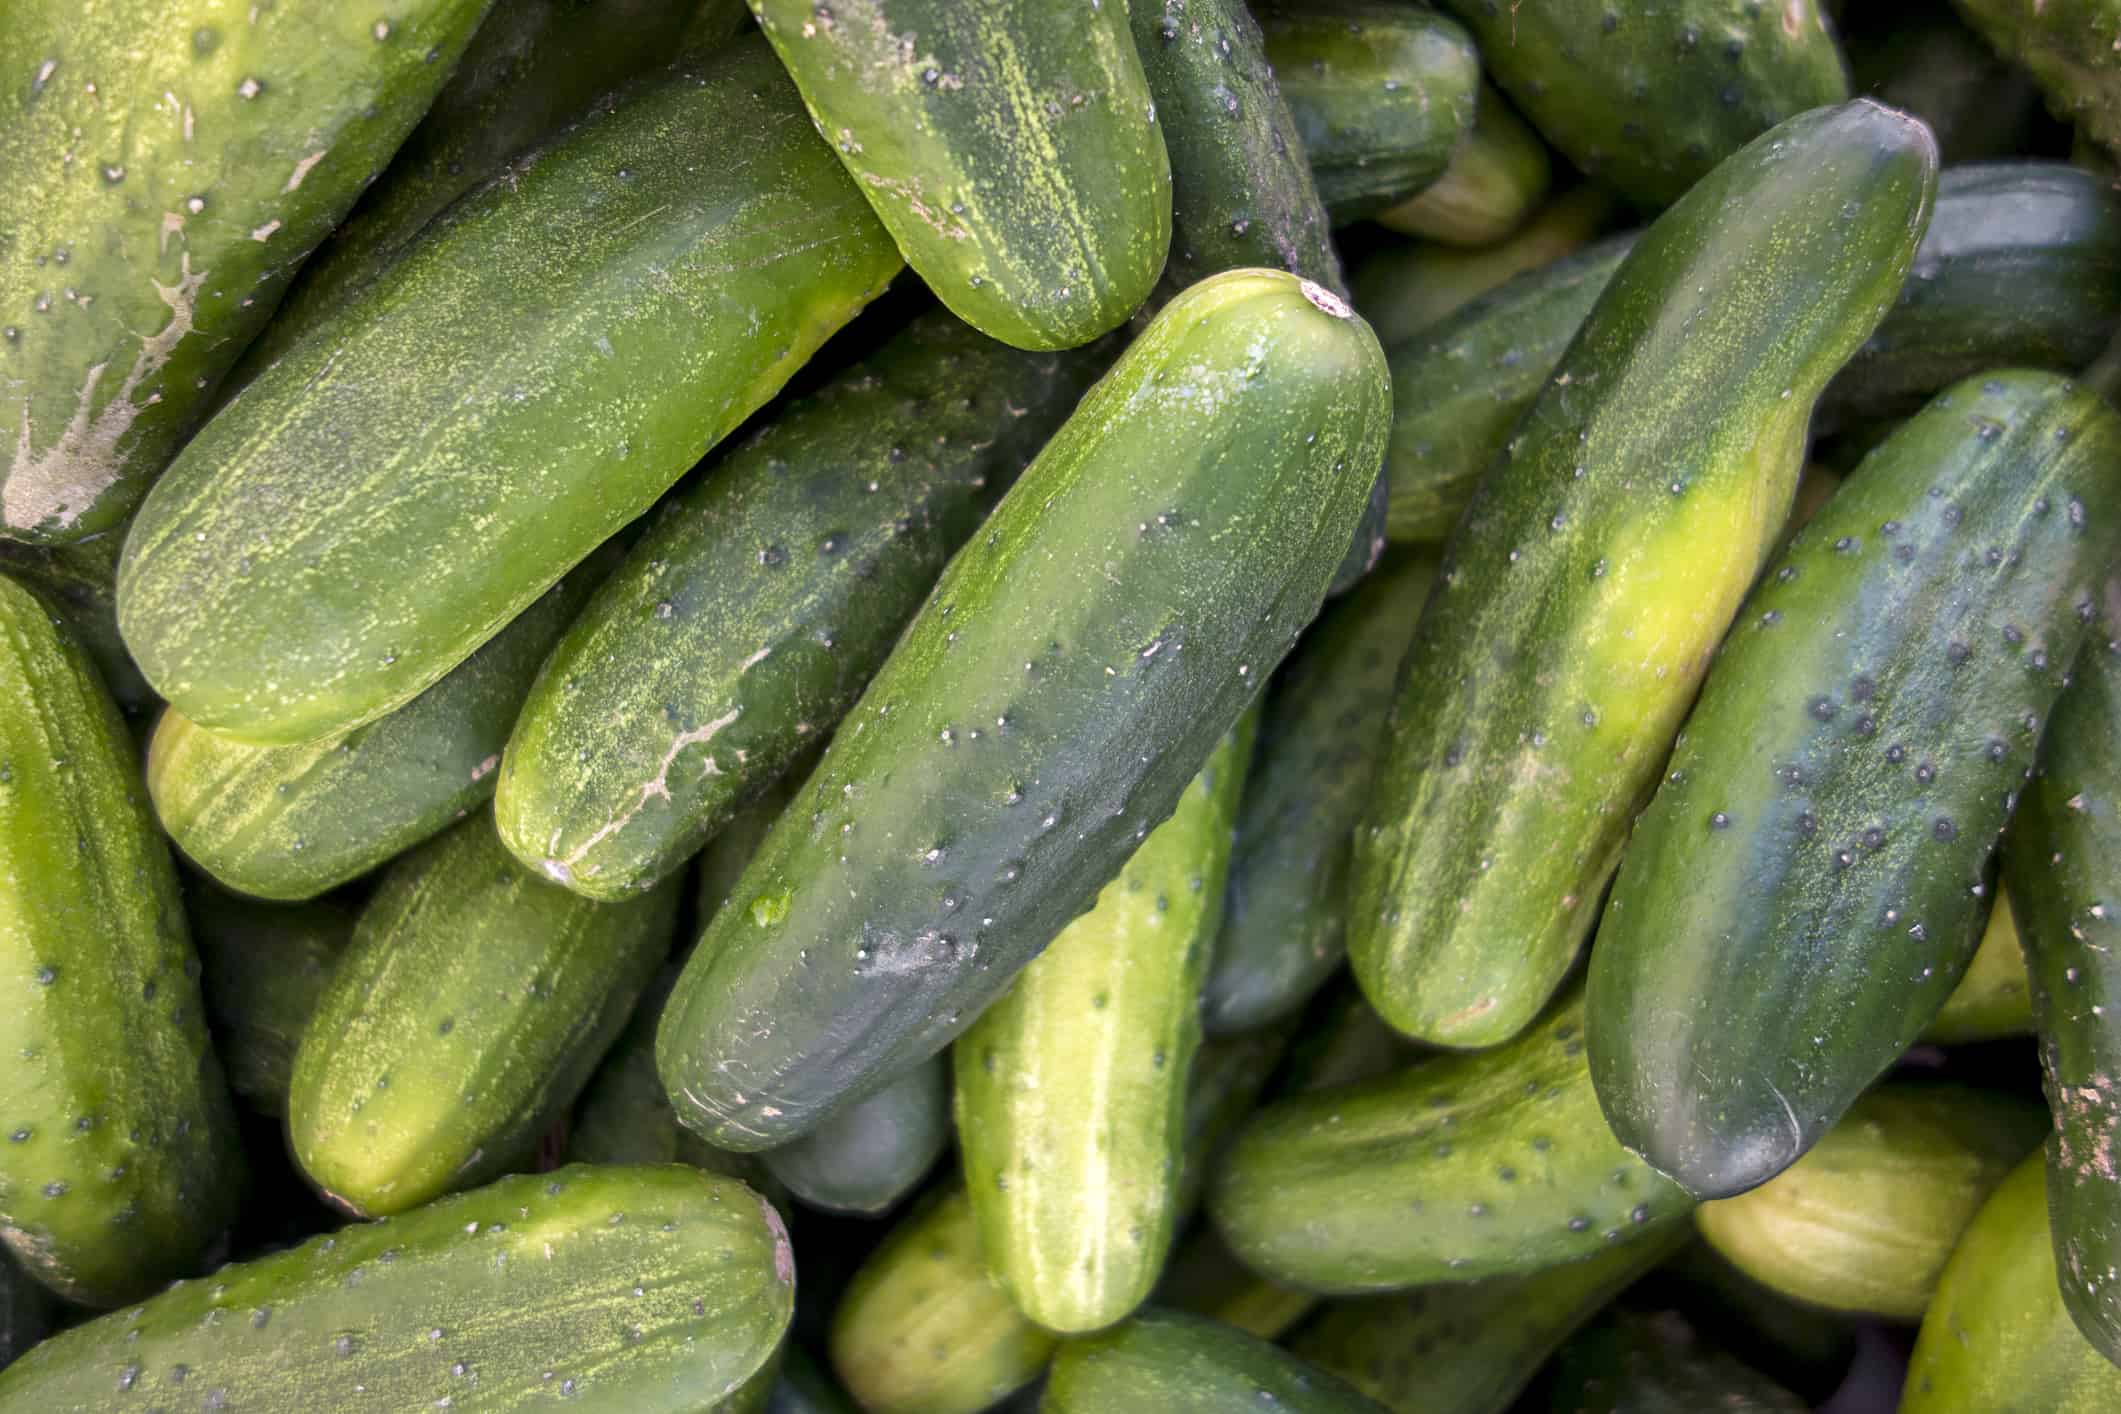 Cucumbers in farmer’s market